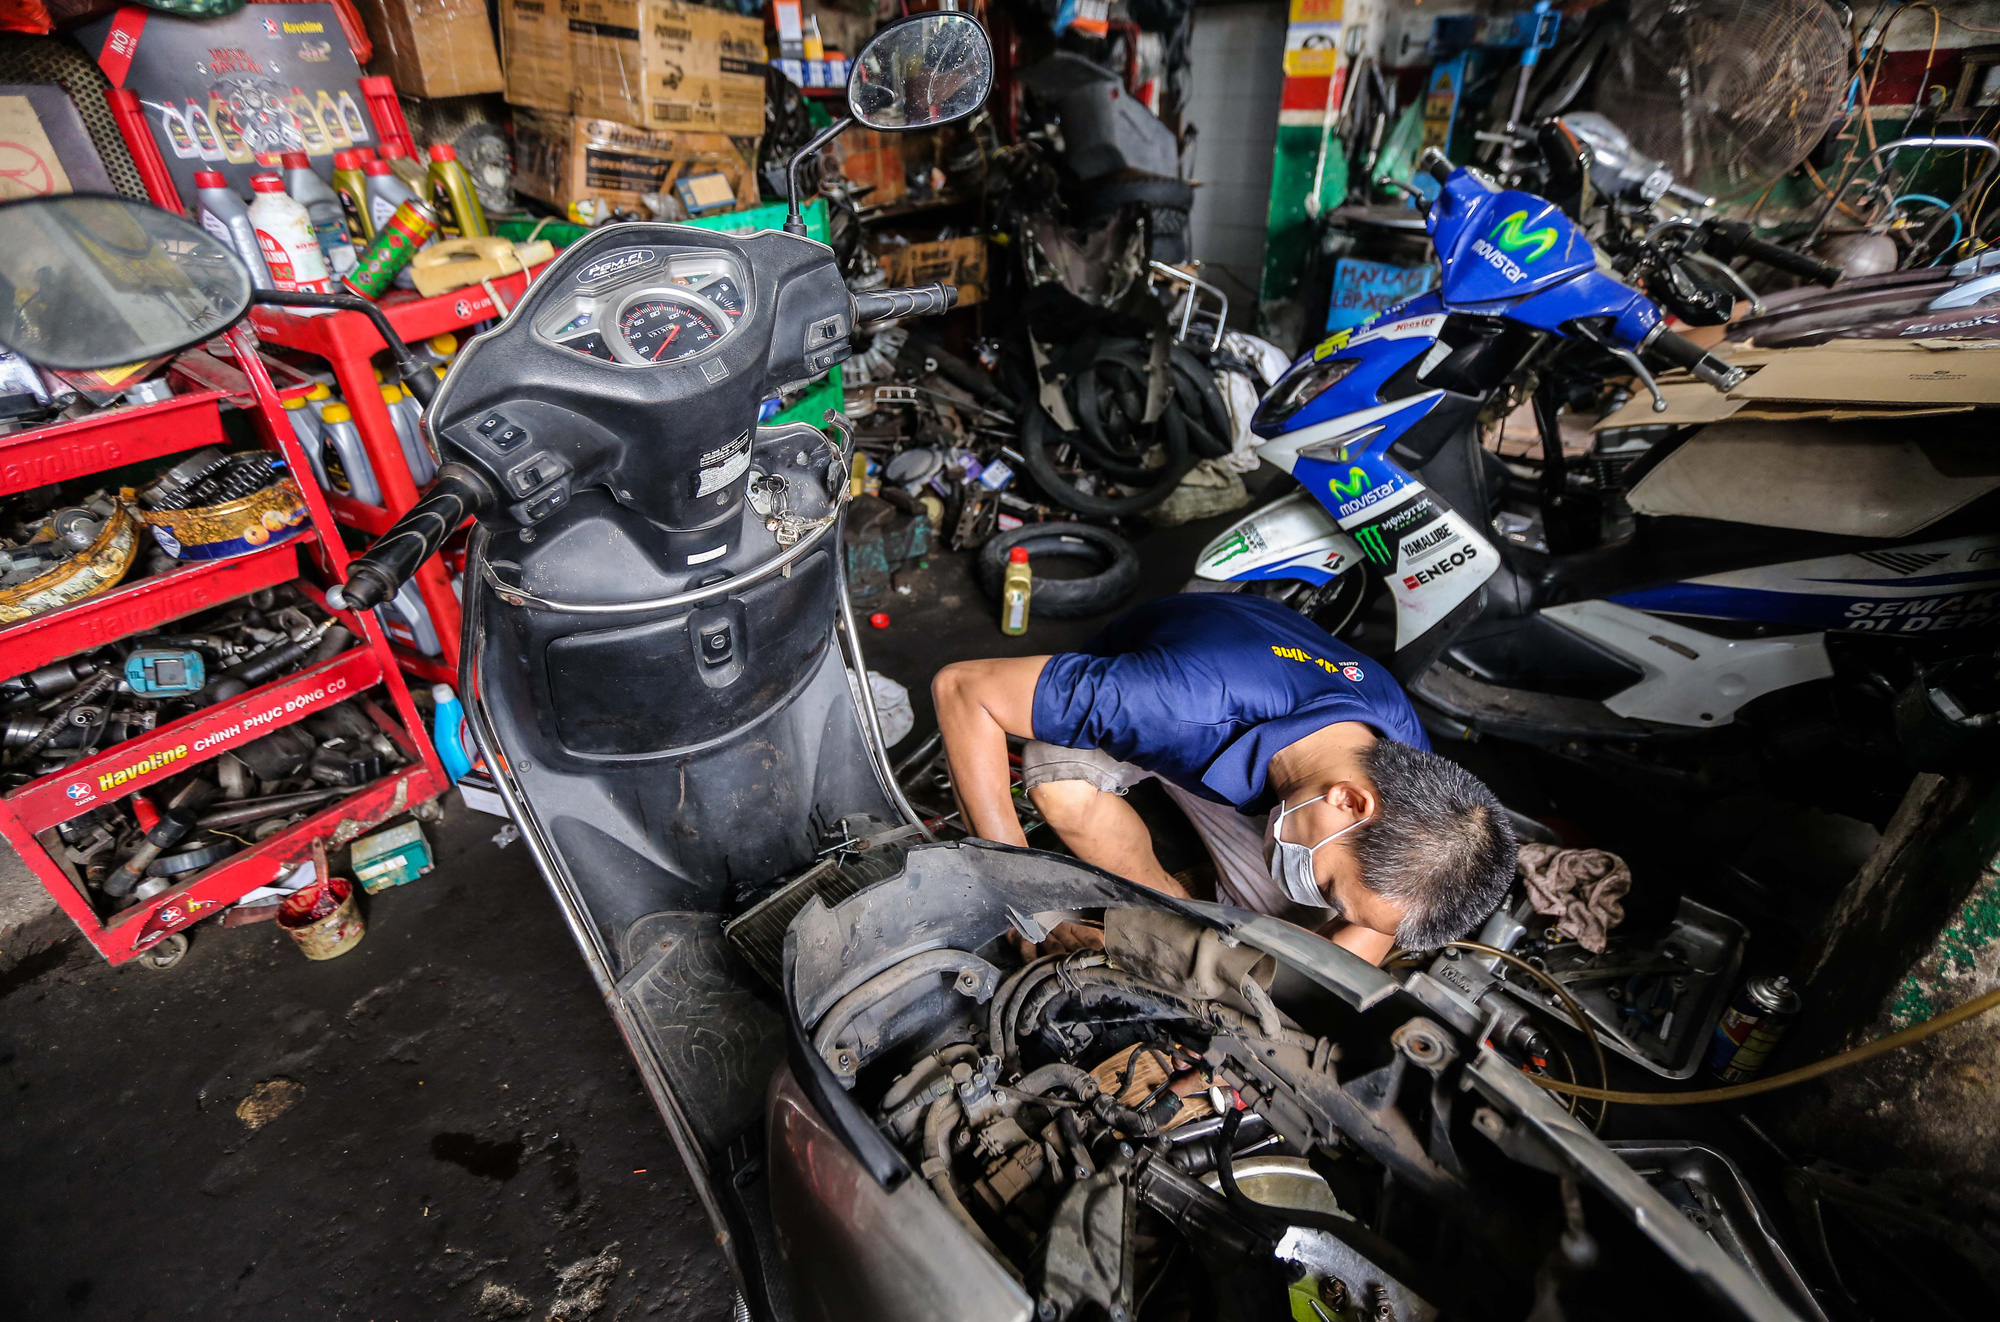 Đã có nhiều cửa hàng sửa xe máy từ chối nhận sửa chữa xe của bạn? Đừng lo, hãy đến với dịch vụ sửa chữa xe máy của chúng tôi, chất lượng và tận tâm. Xem ảnh để hiểu rõ hơn về quy trình thực hiện của chúng tôi, và đừng ngại liên hệ với chúng tôi nhé!